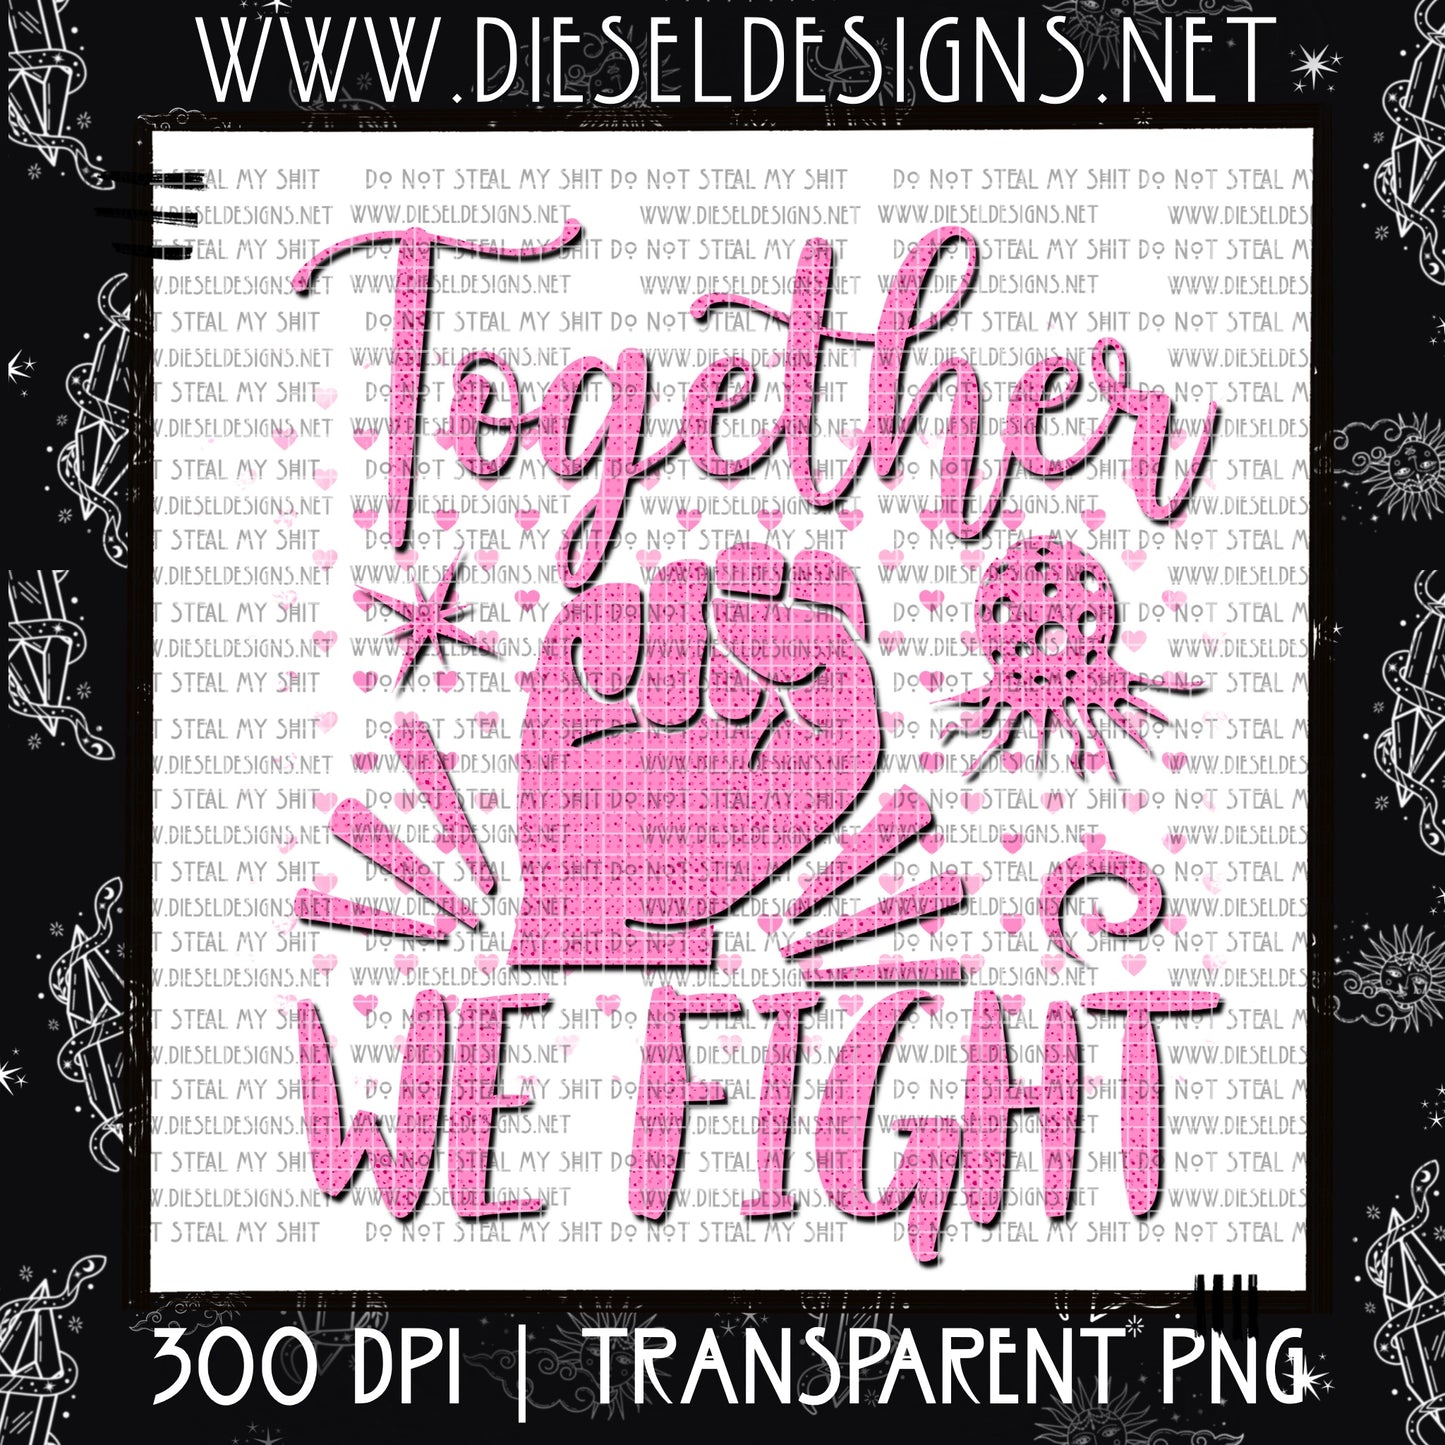 Together we Fight | 300 DPI | Transparent PNG